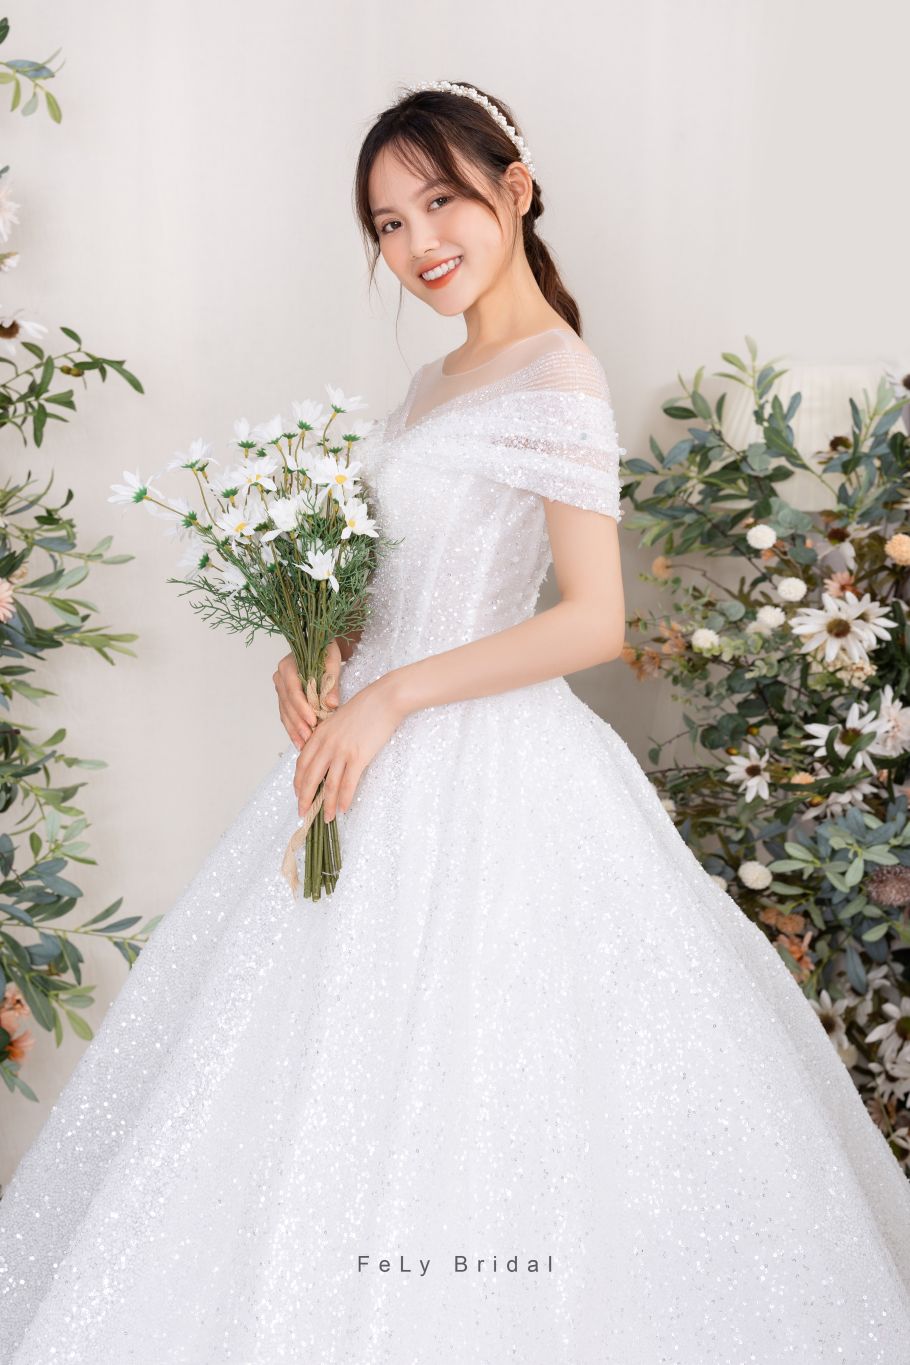 Váy cưới công chúa – Lựa chọn hoàn hảo cho cô dâu gầy